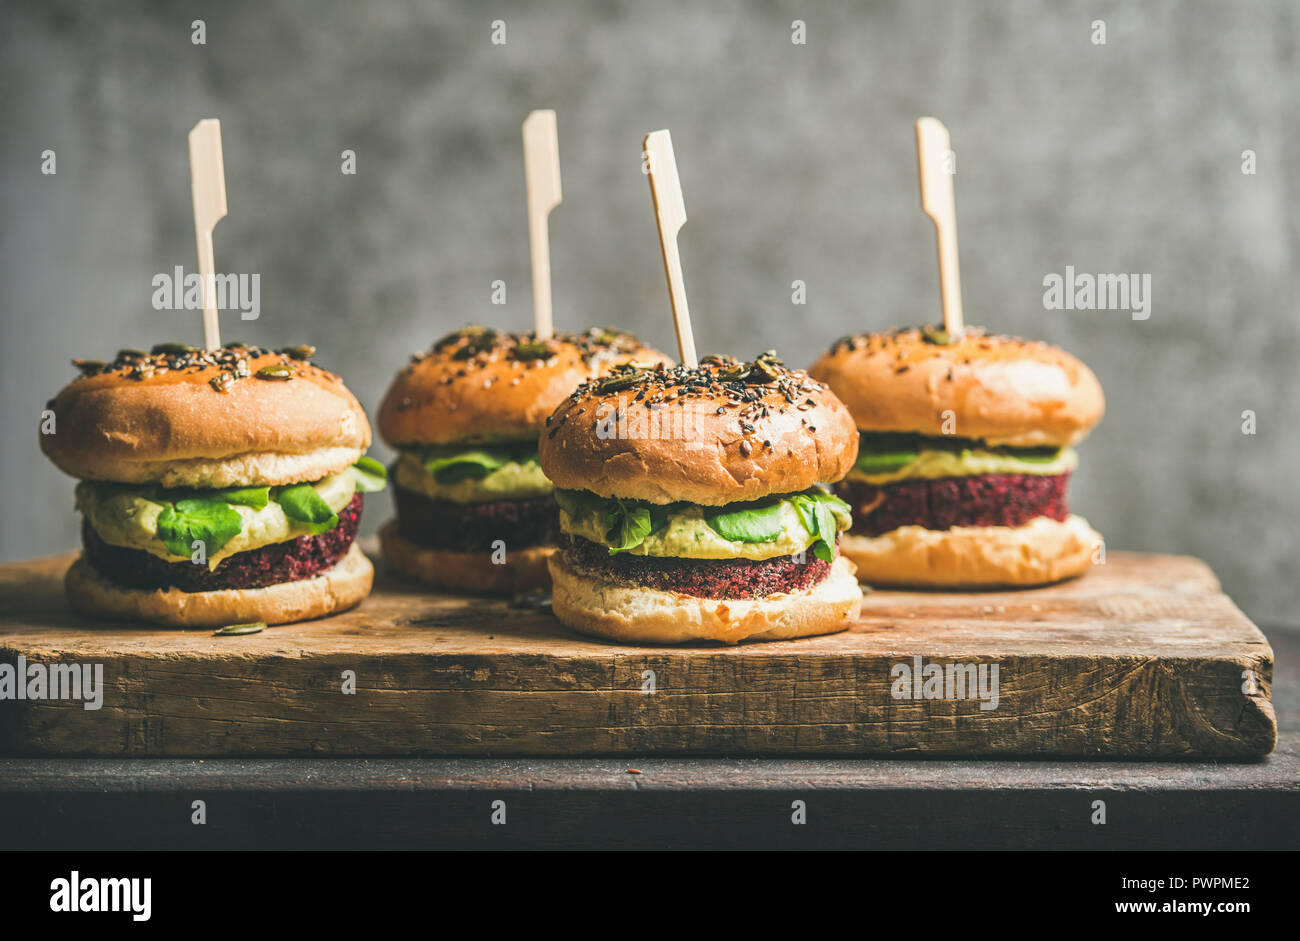 Télévision à jeter des hamburgers végétaliens sains avec quinoa galettes de betteraves, choux vert et crème d'avocat sur planche de bois, mur gris à l'arrière-plan. Végétarien, Banque D'Images